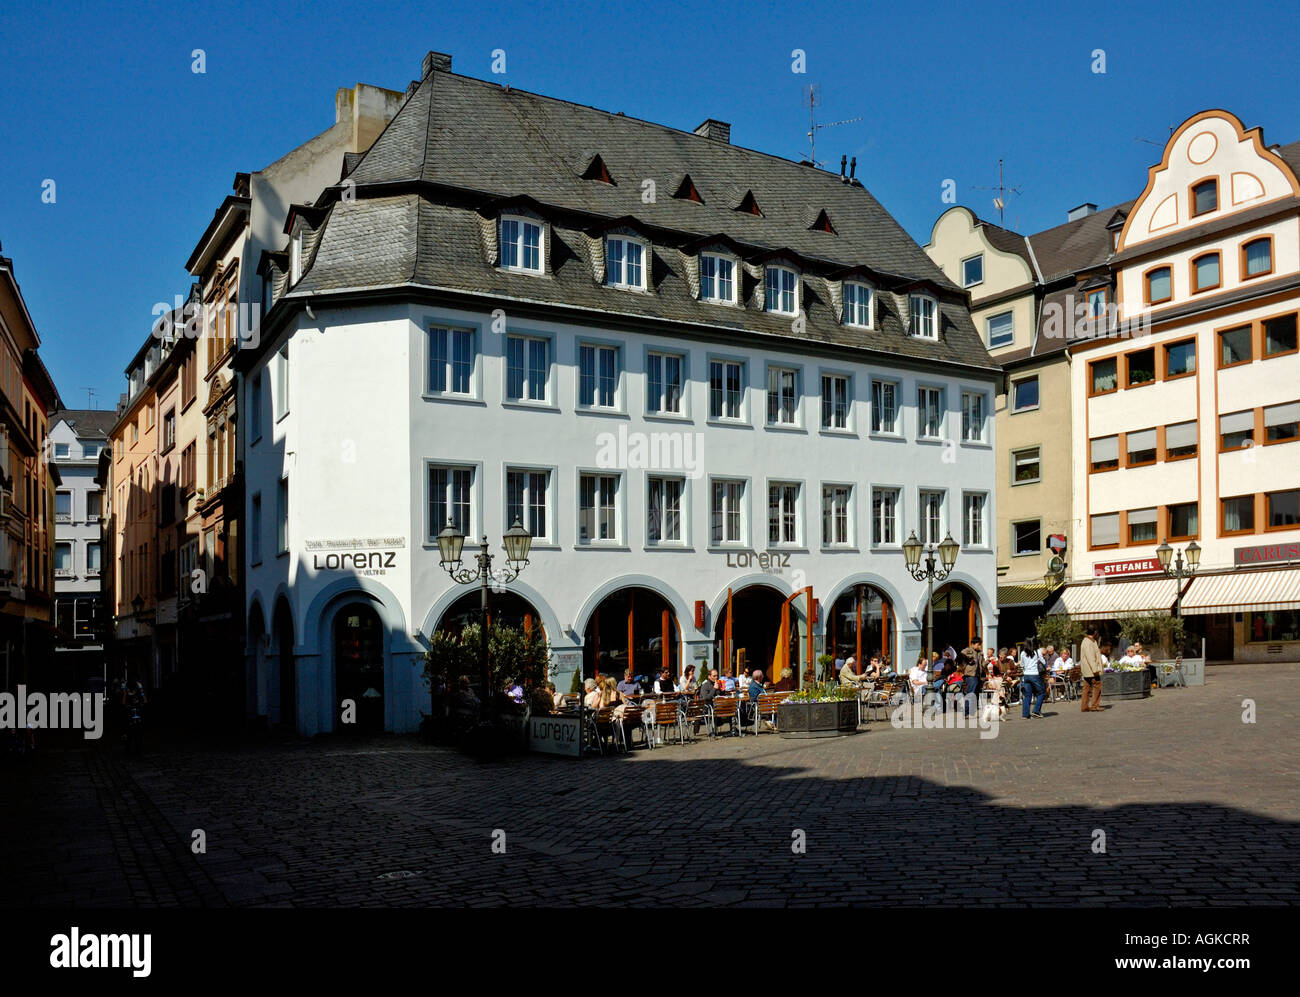 Street Café on Jesuit Square in Koblenz, Germany. Stock Photo